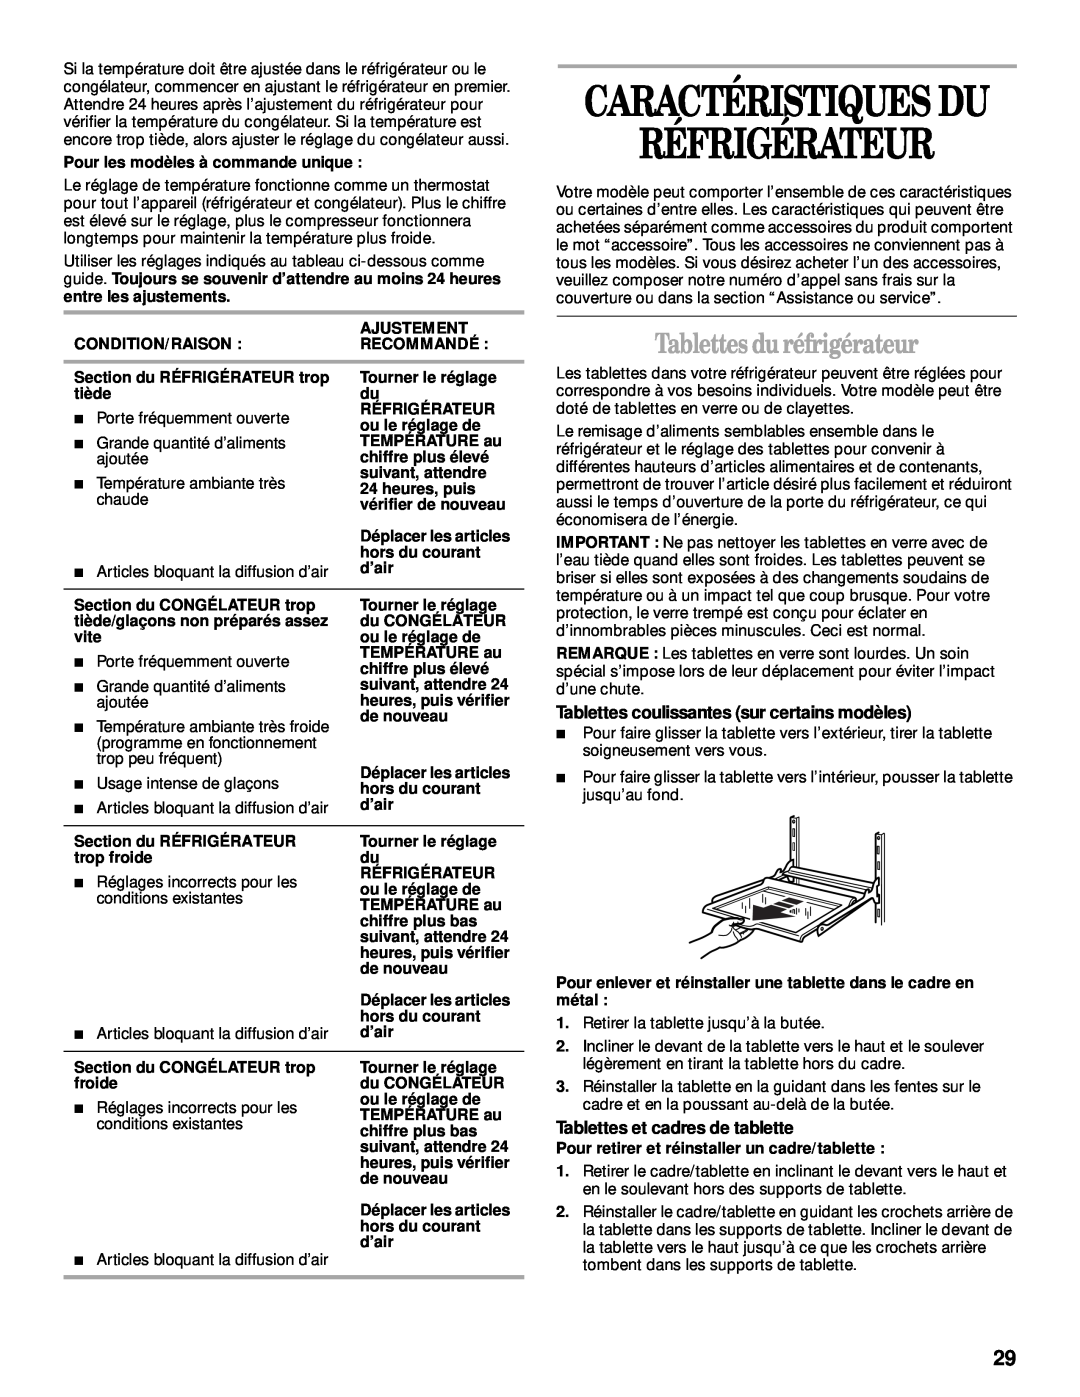 Whirlpool 2205266 manual Réfrigérateur, Tablettes du réfrigérateur, Caractéristiques Du, Tablettes et cadres de tablette 